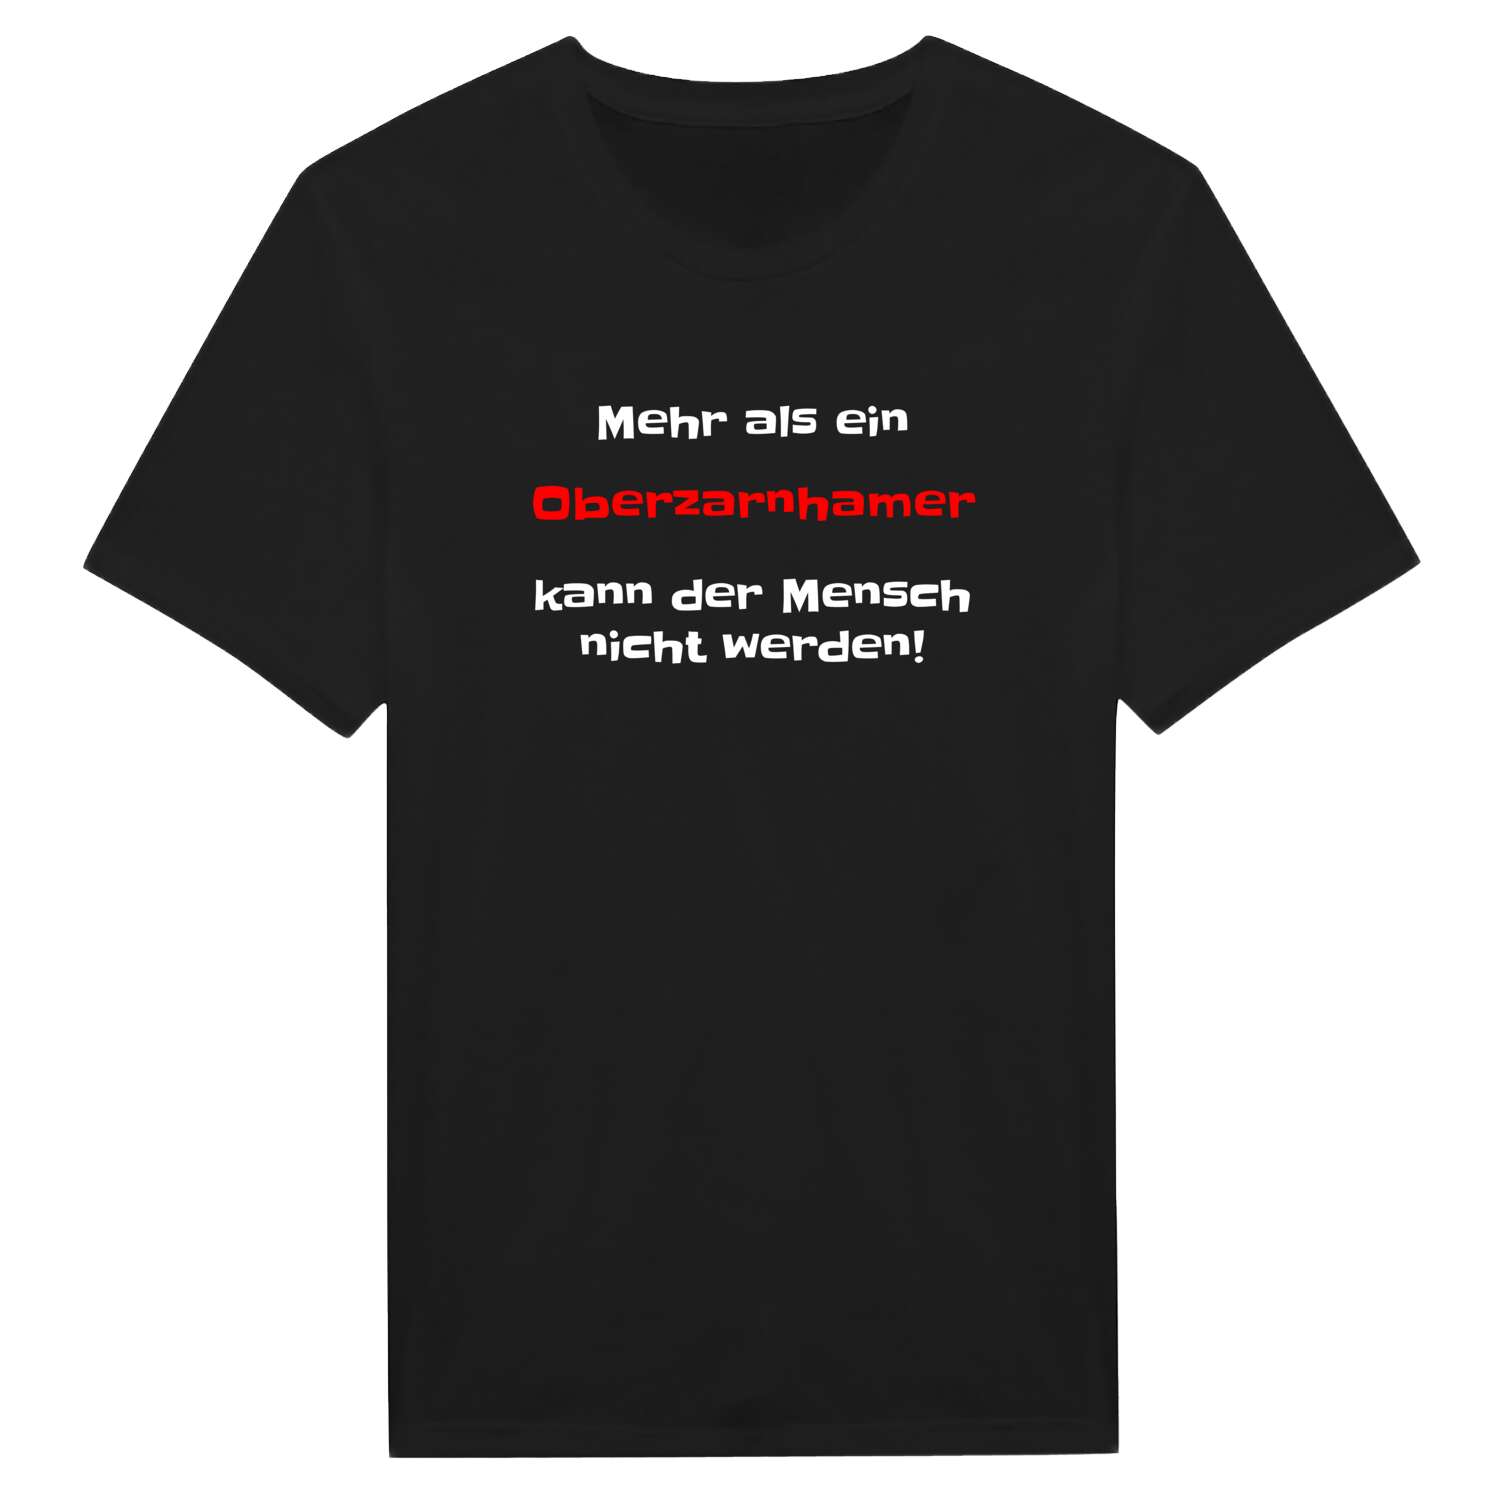 Oberzarnham T-Shirt »Mehr als ein«